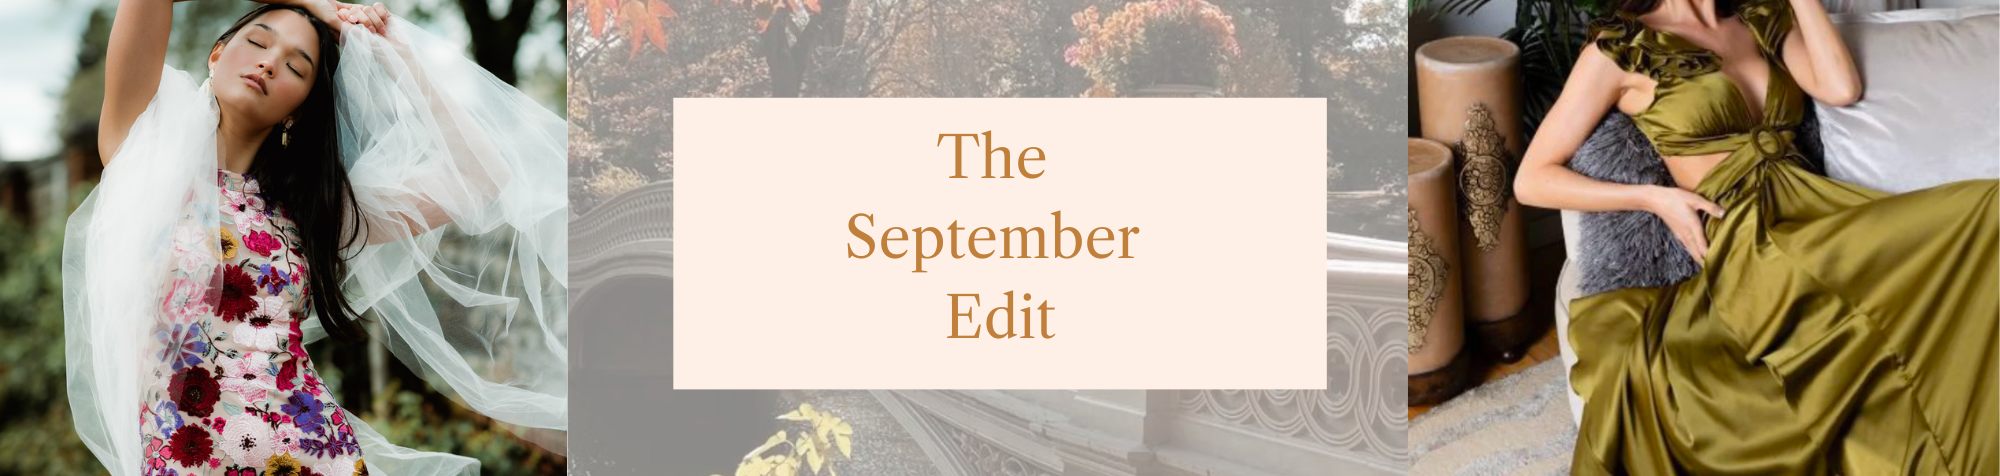 The September Edit